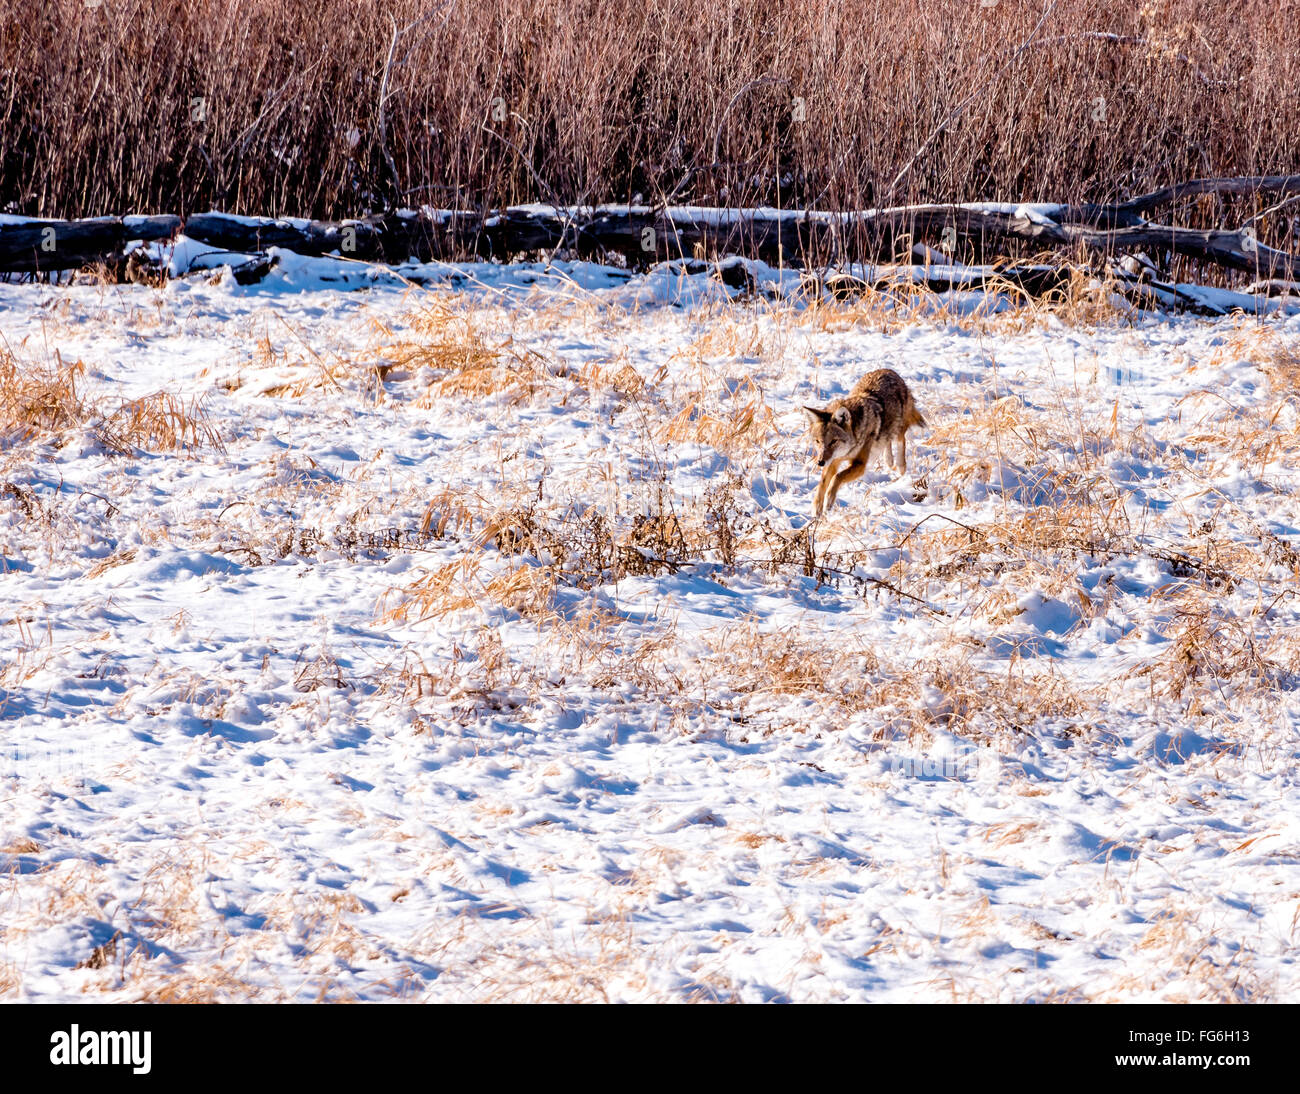 Pouncing Coyote sur dans un champ de neige Banque D'Images